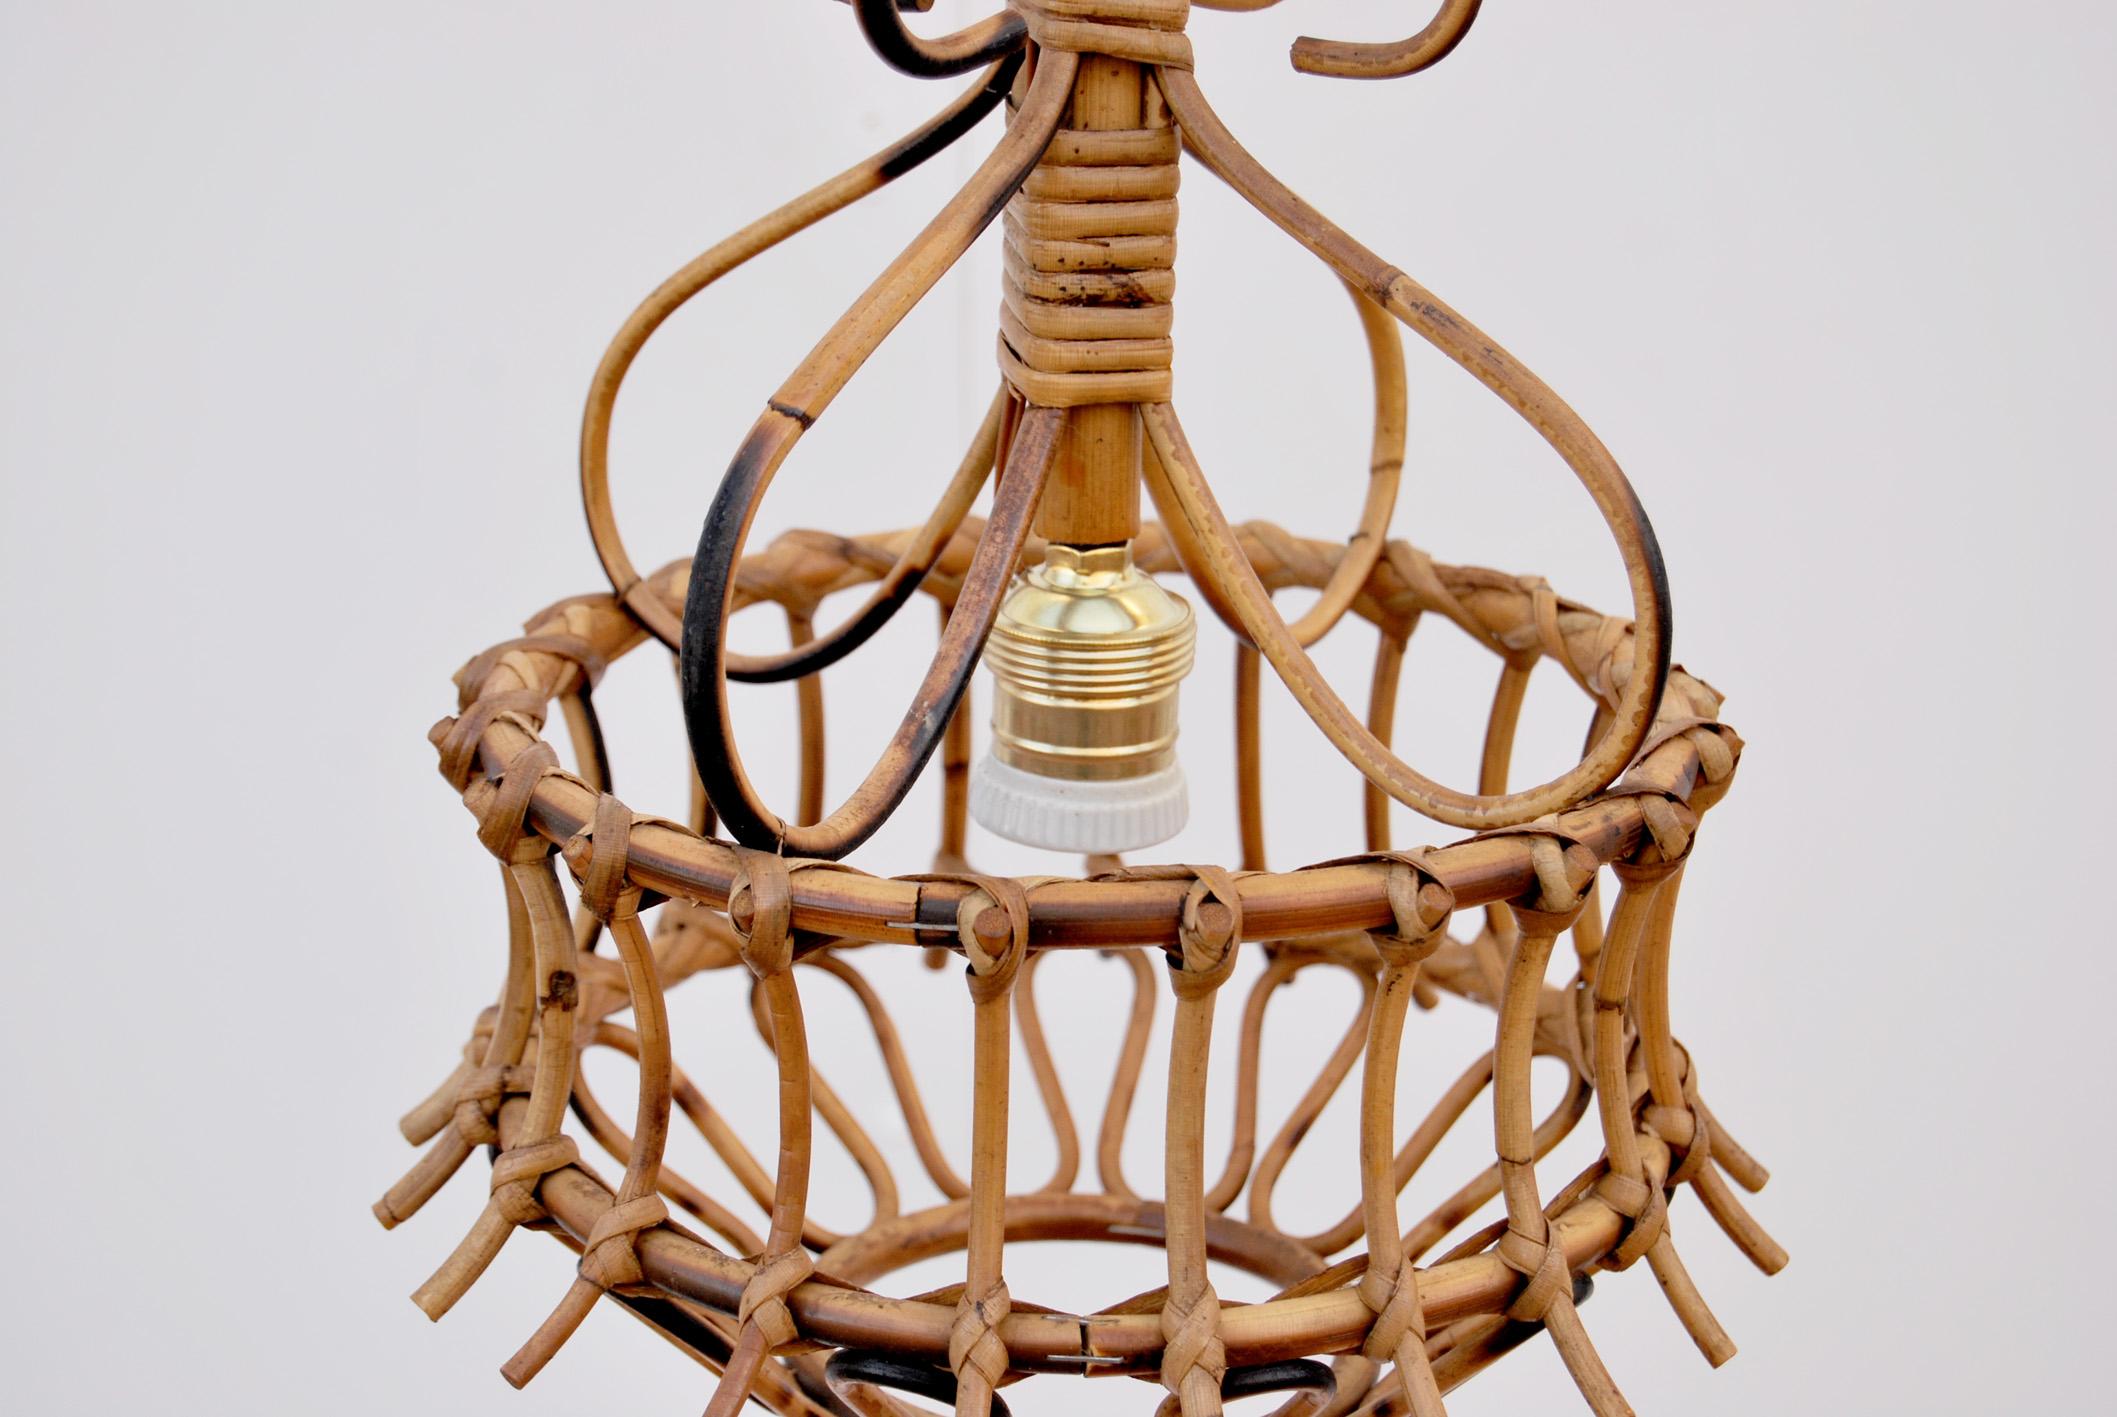 Lampe en bambou et vimini, Anni '60, Made in Italy. 
La lampe est composée d'un paralume en bambou travaillé à la main, et la chatte est composée de baguettes en rotin, qui peuvent être réglées en hauteur. La lampe a été remplacée et restaurée et